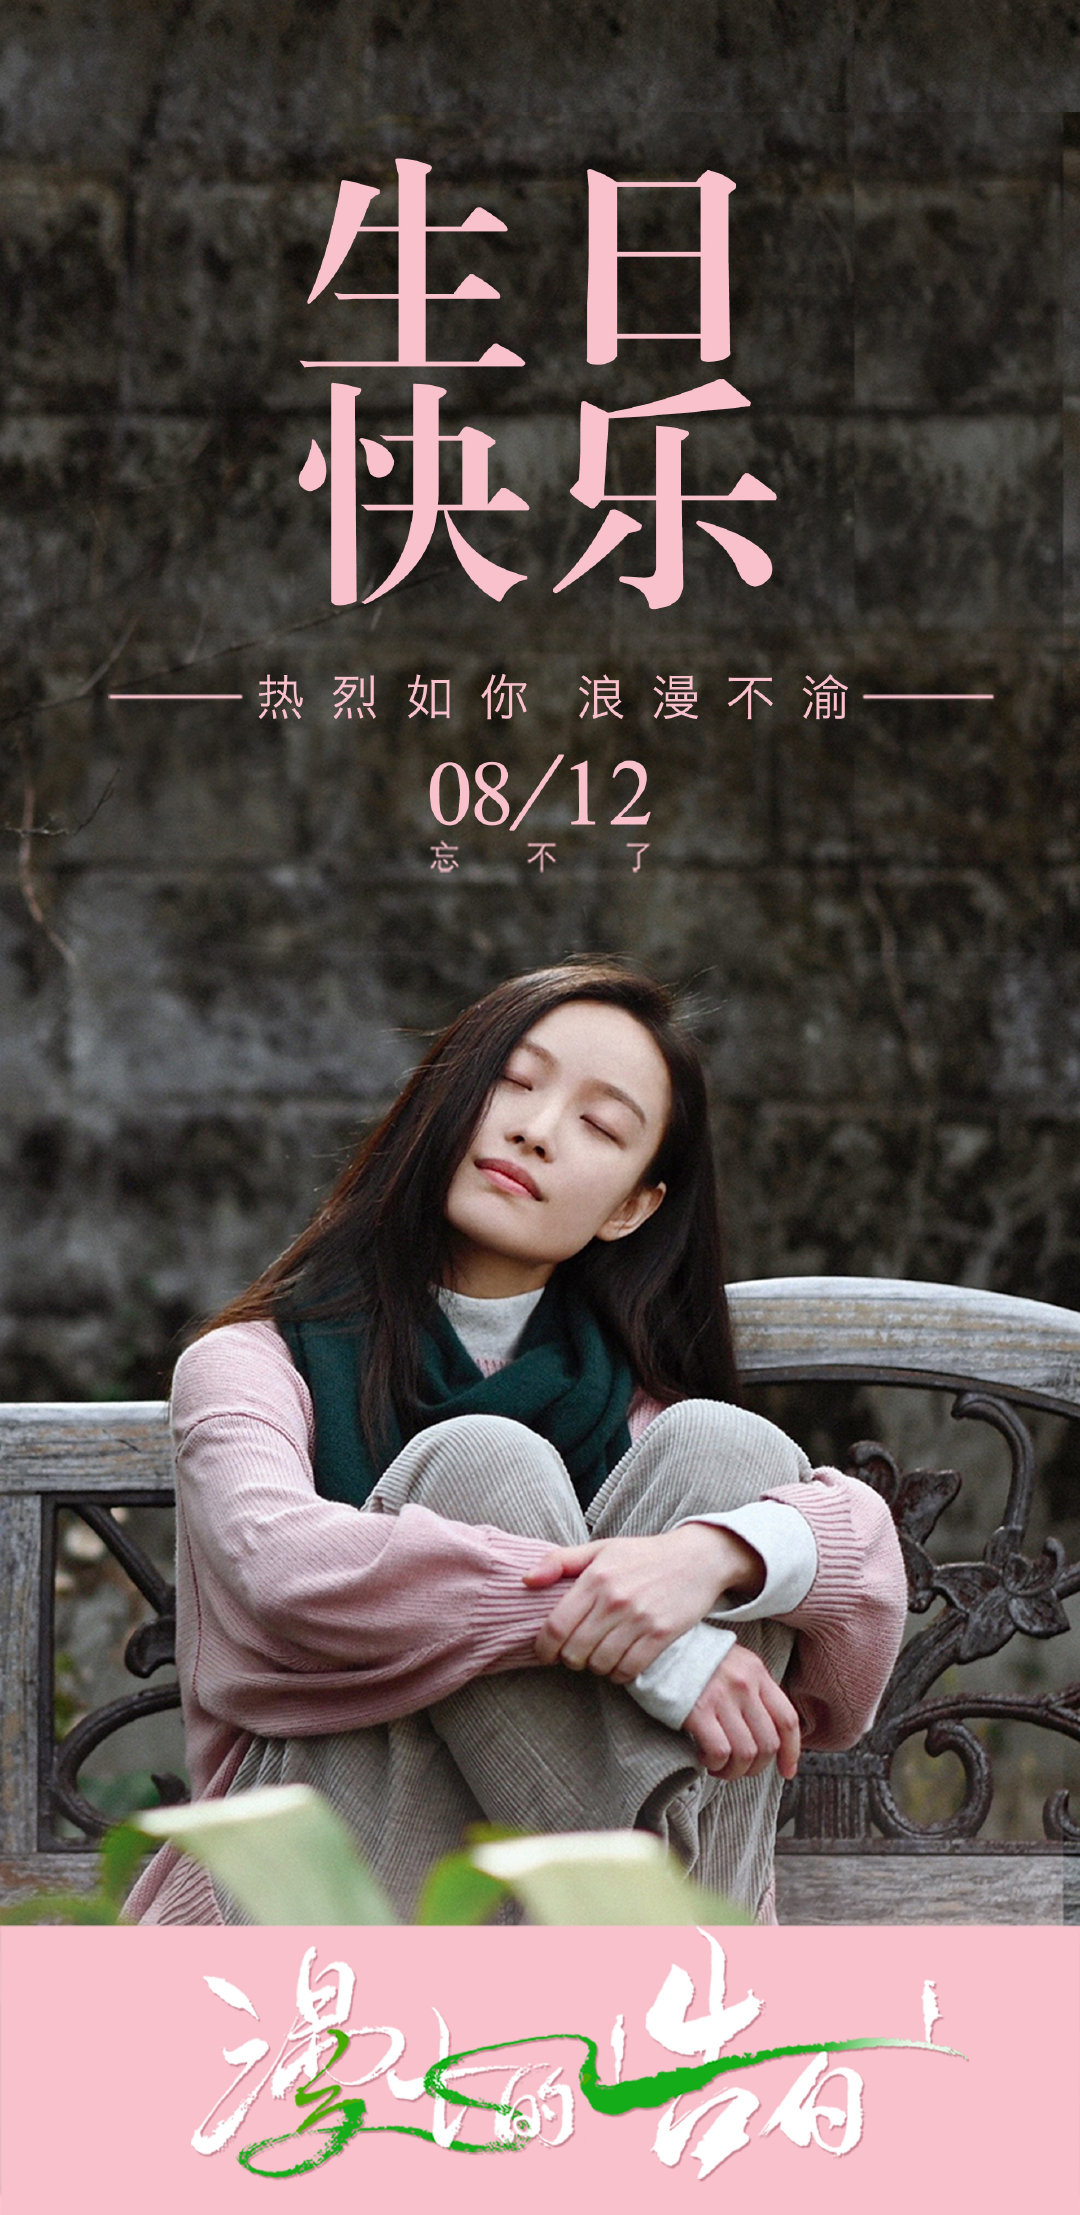 电影《漫长的告白》卡点为倪妮庆生 将于8.12上映(图1)